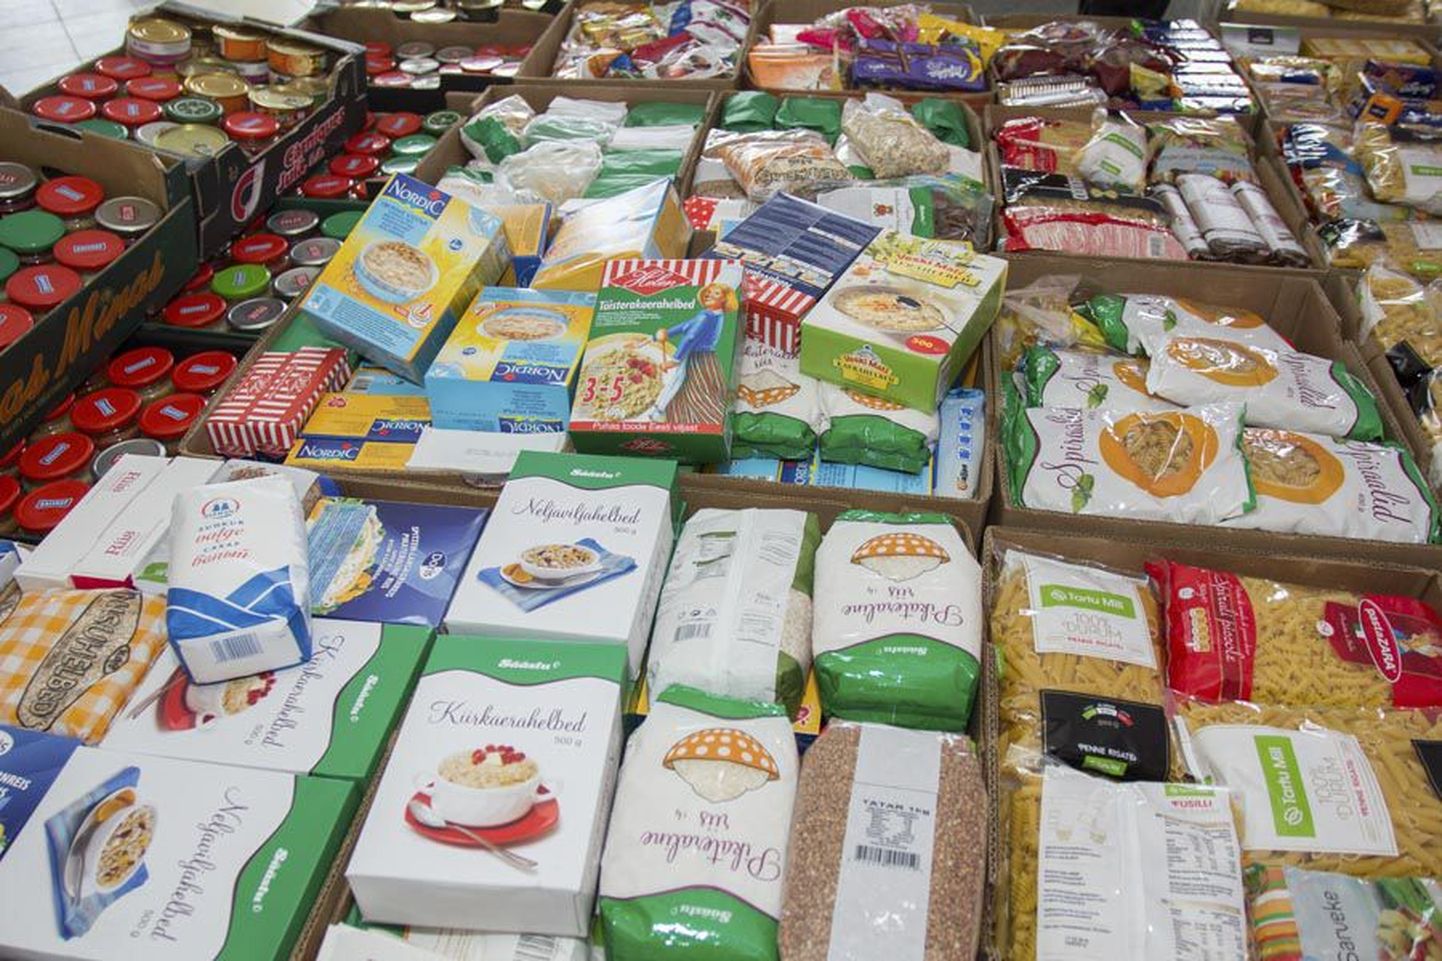 Nädalavahetusel annetati kolmes Viljandi poes toidupangale 1,33 tonni toiduaineid.